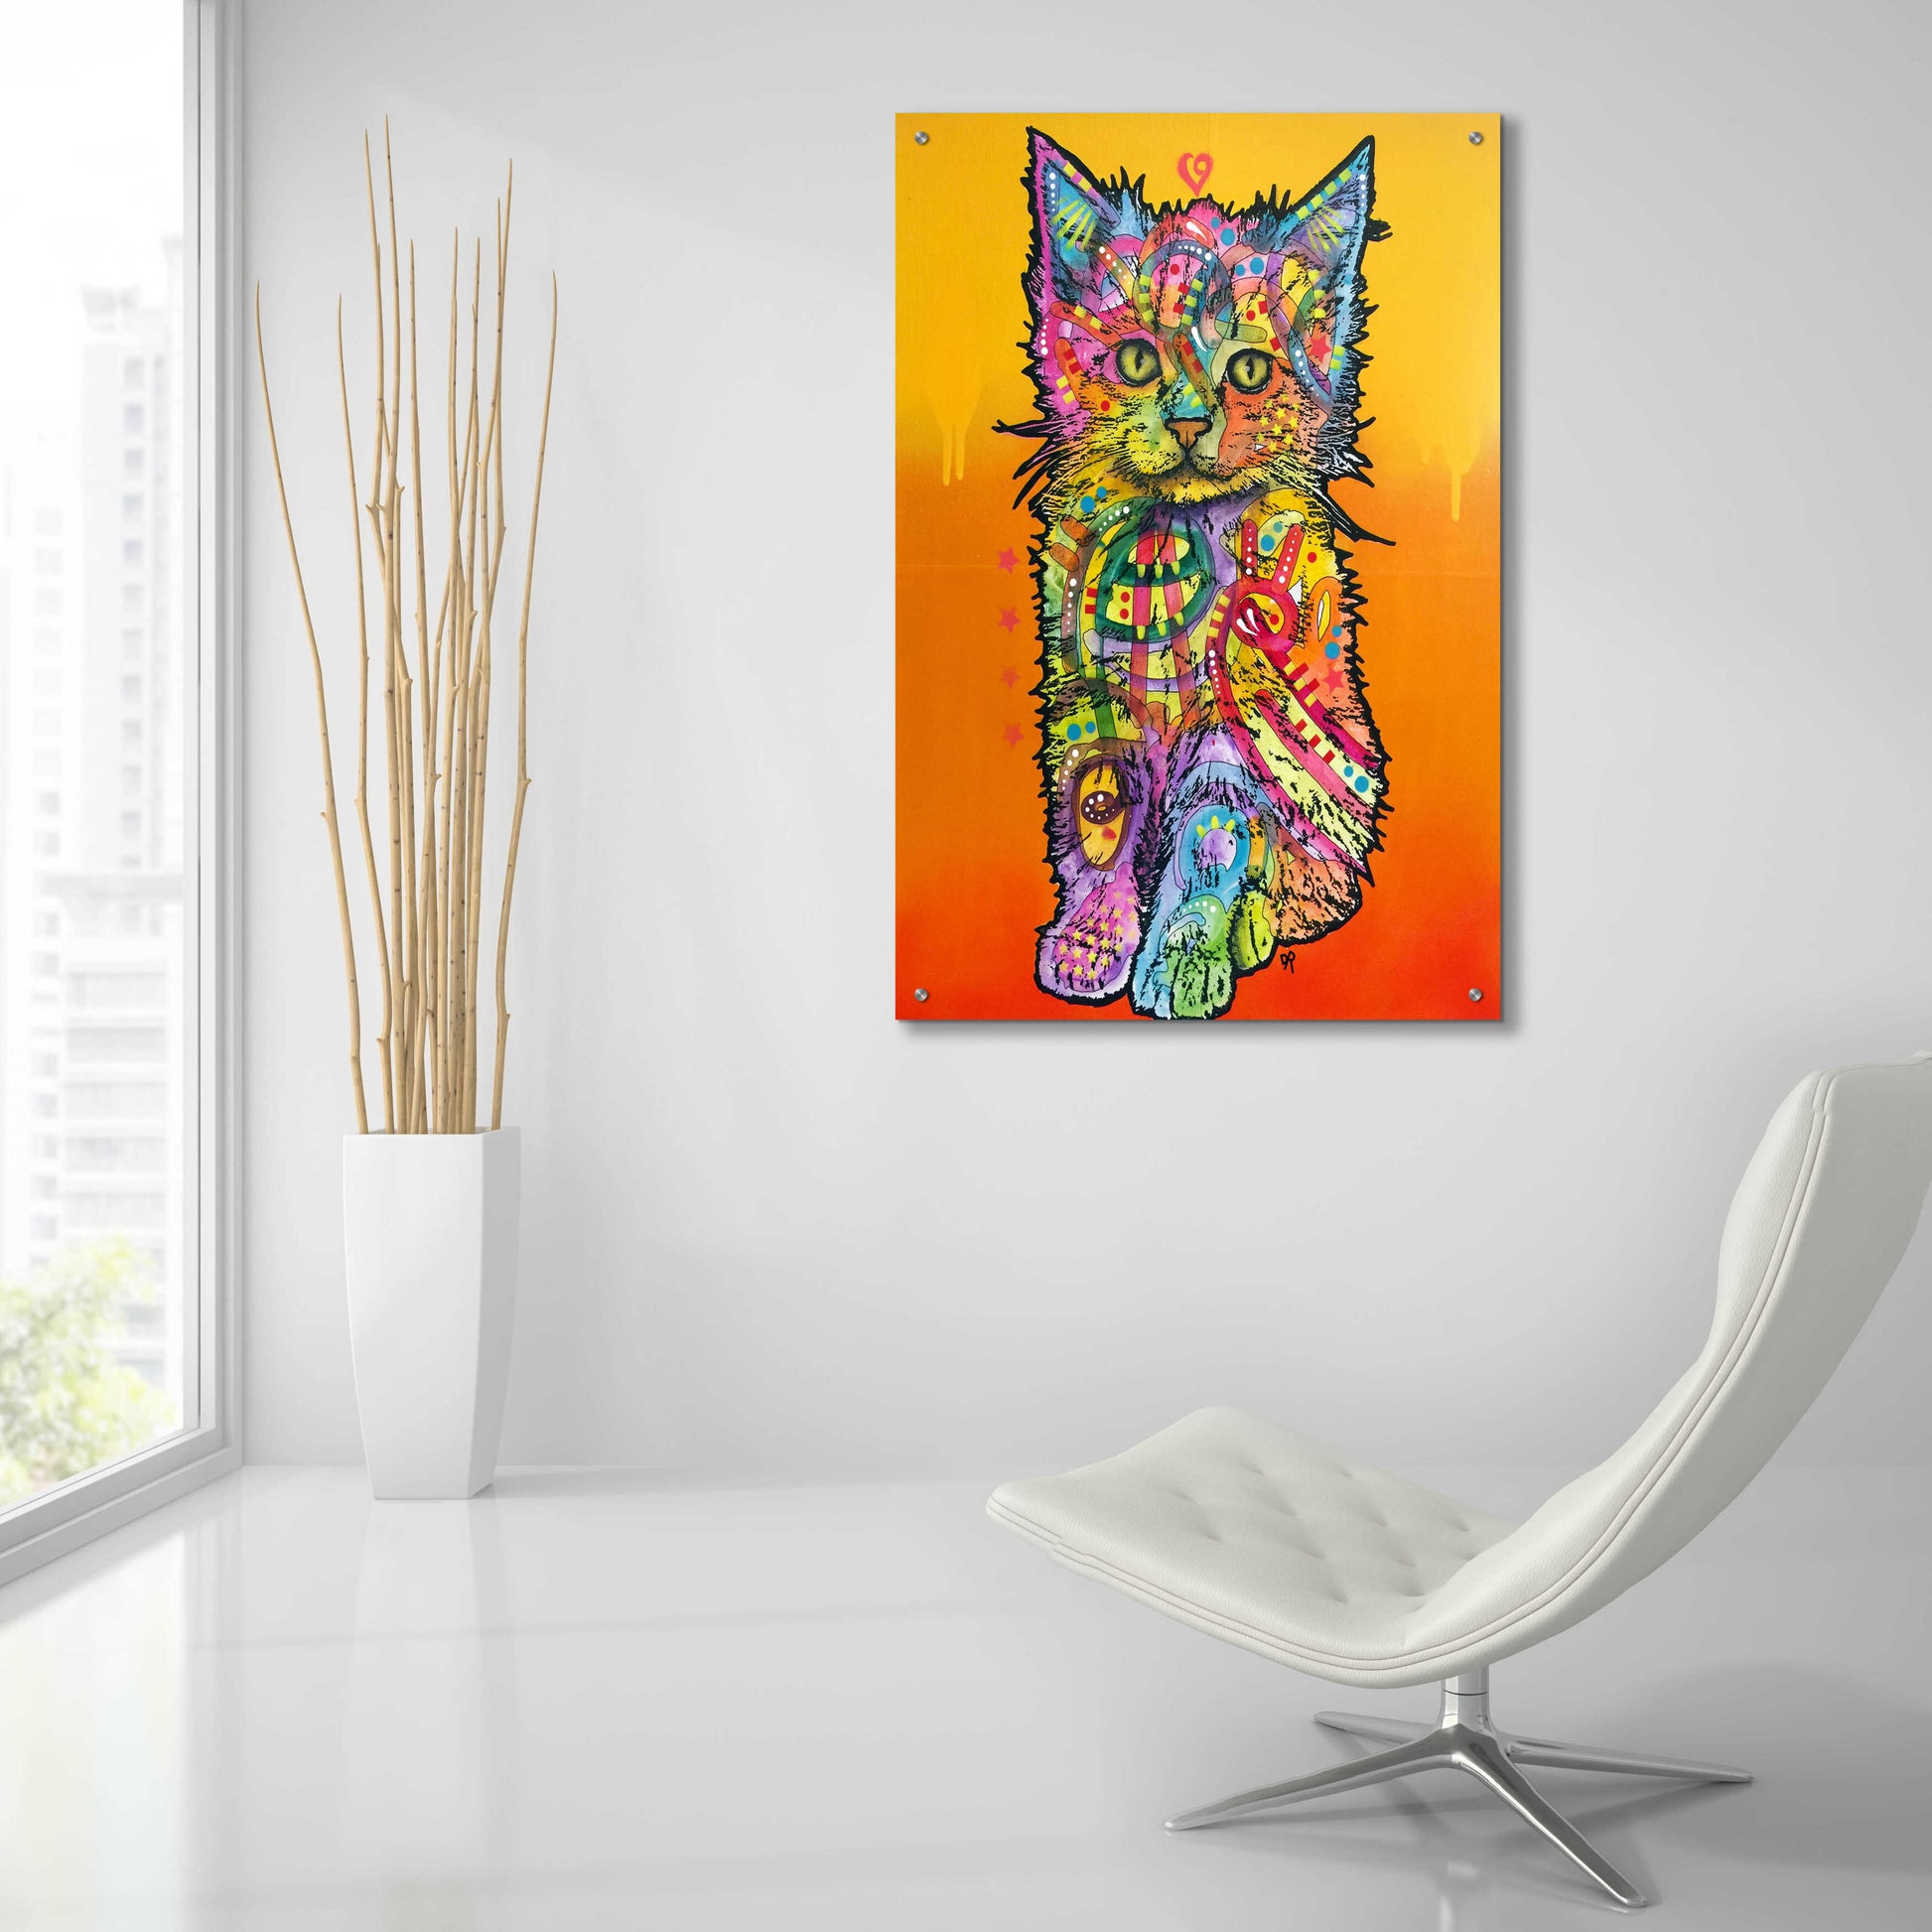 Epic Art 'Love Kitten' by Dean Russo, Acrylic Glass Wall Art,24x36